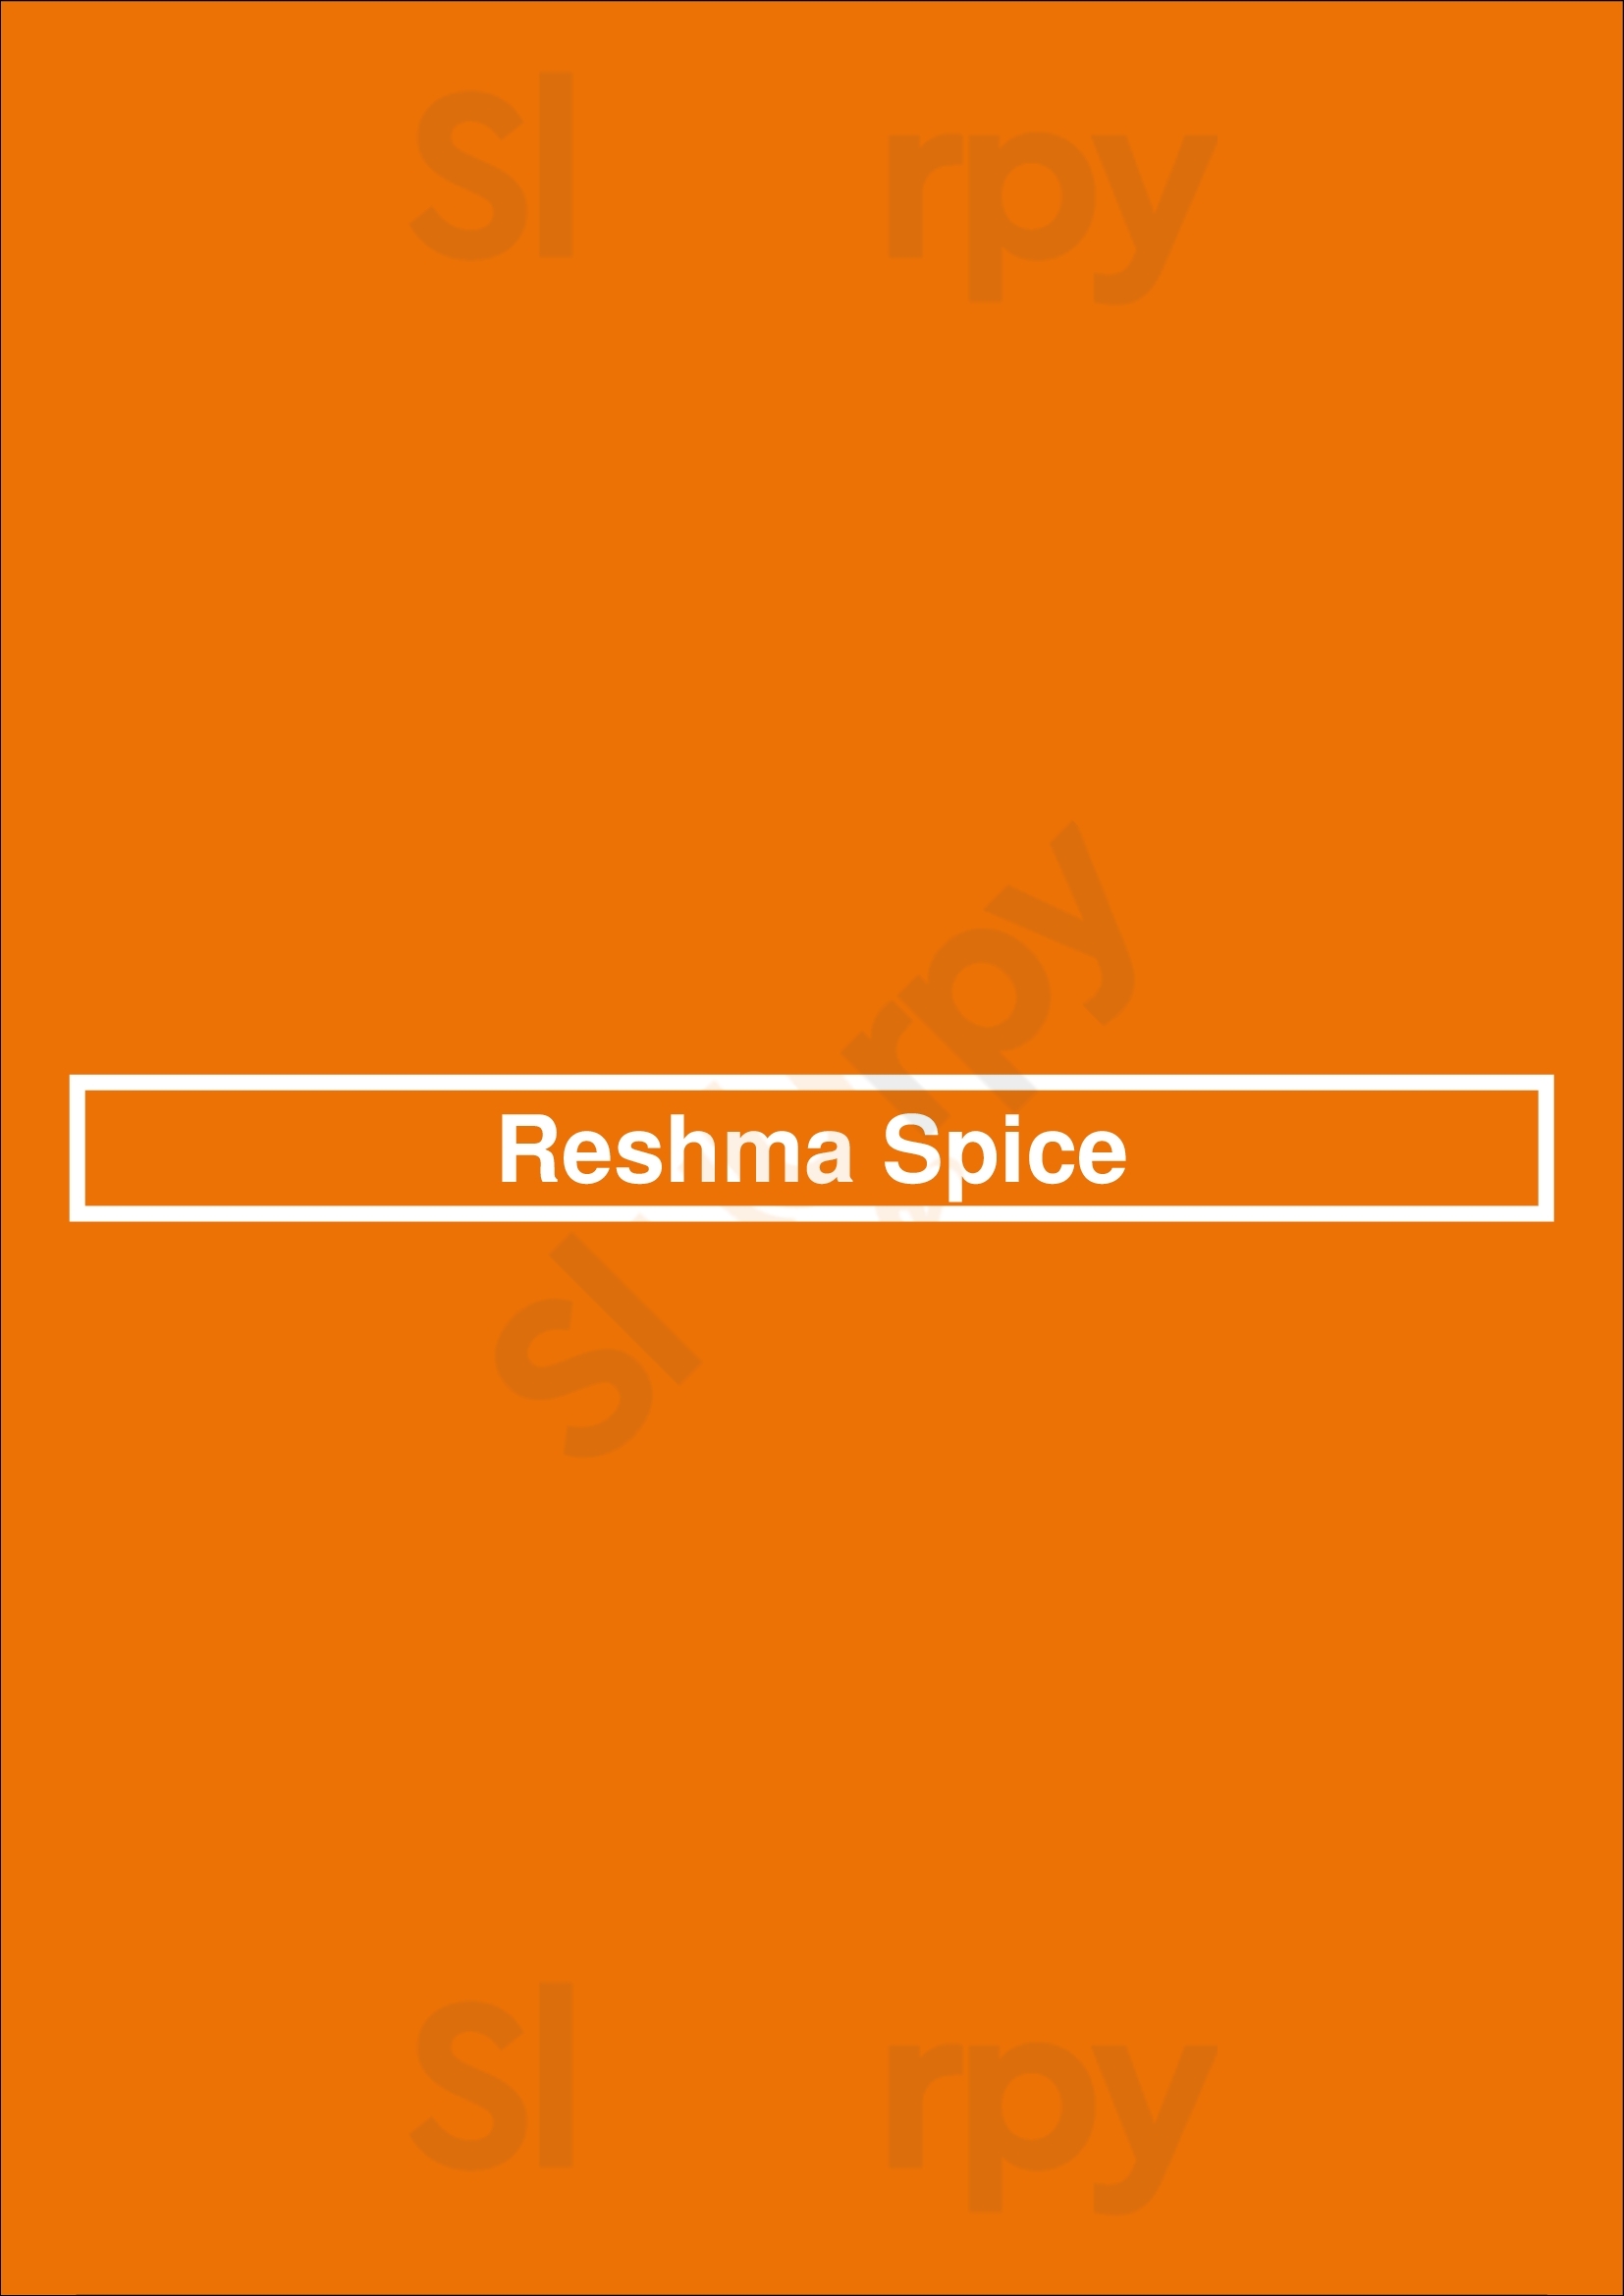 Reshma Spice Selby Menu - 1